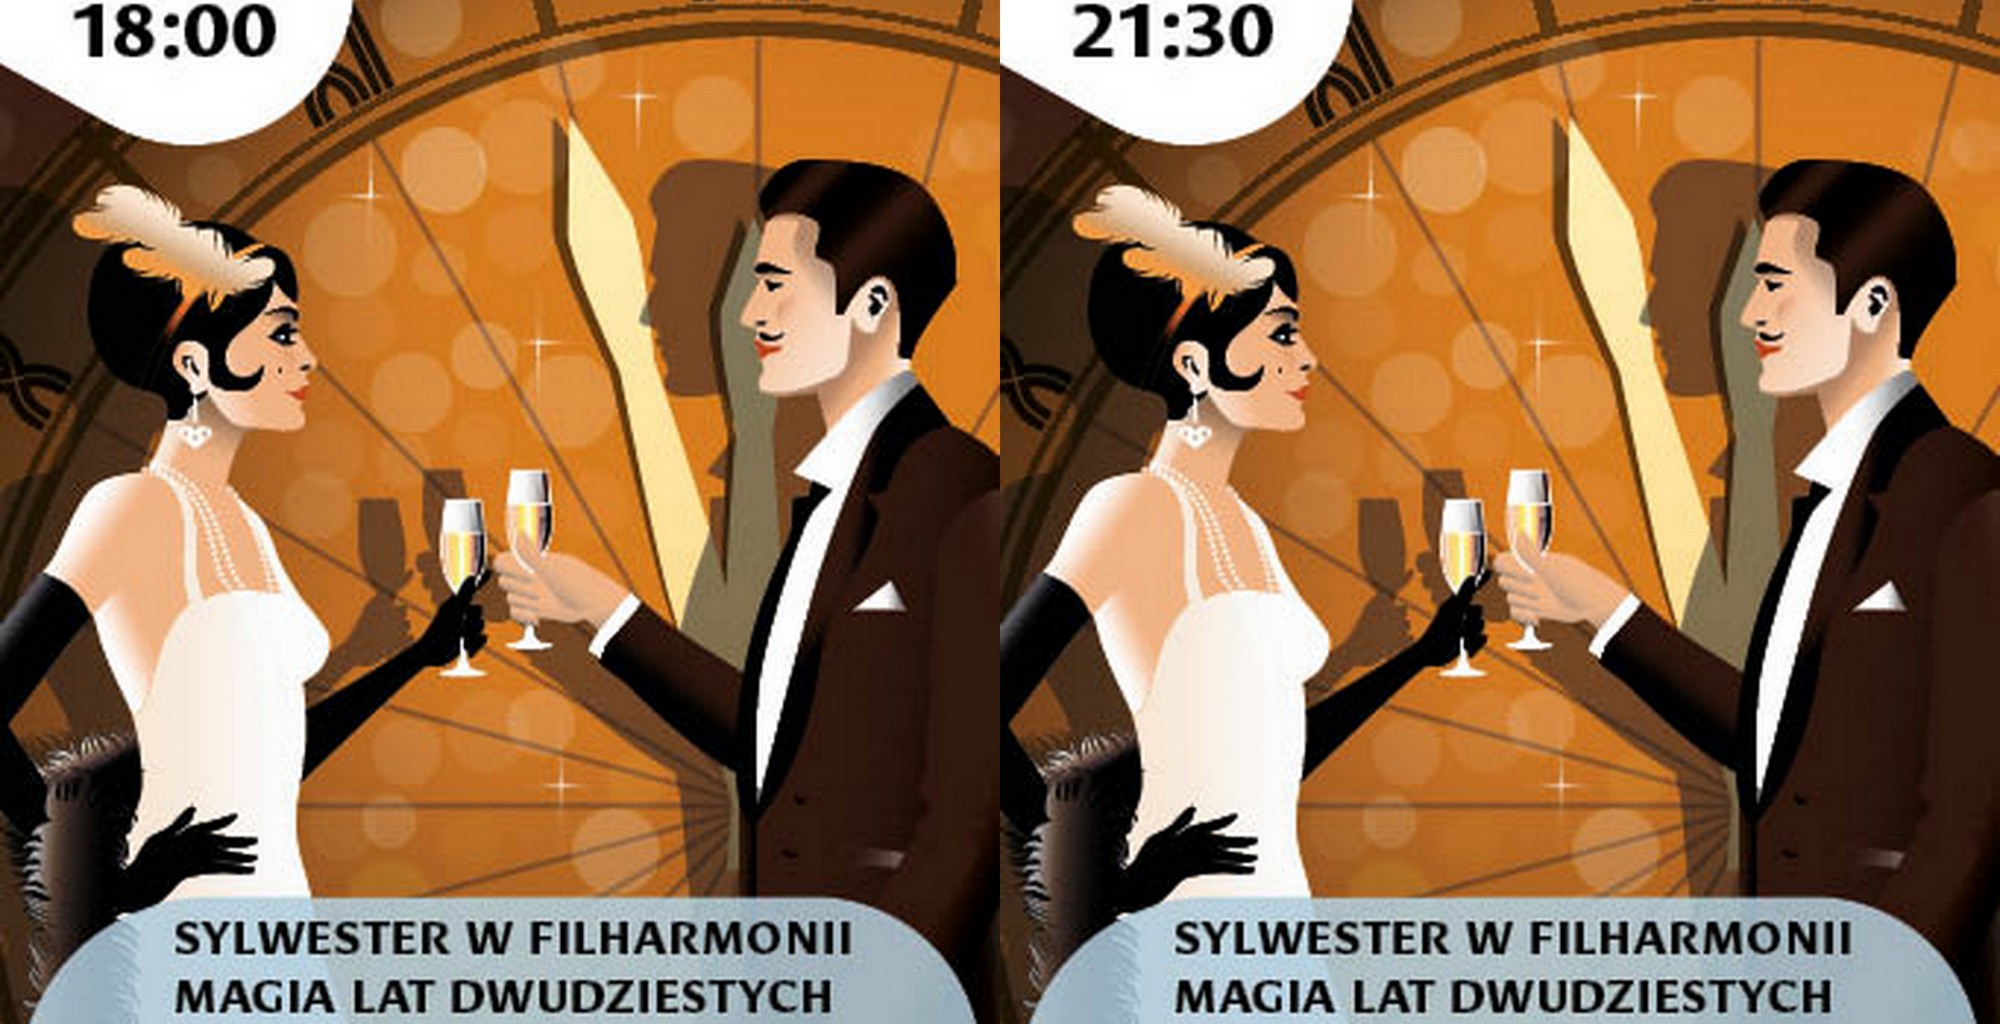 Wieczór sylwestrowy w Filharmonii Opolskiej odbędzie się o dwóch do wybory porach: o 18:00 i 21:30